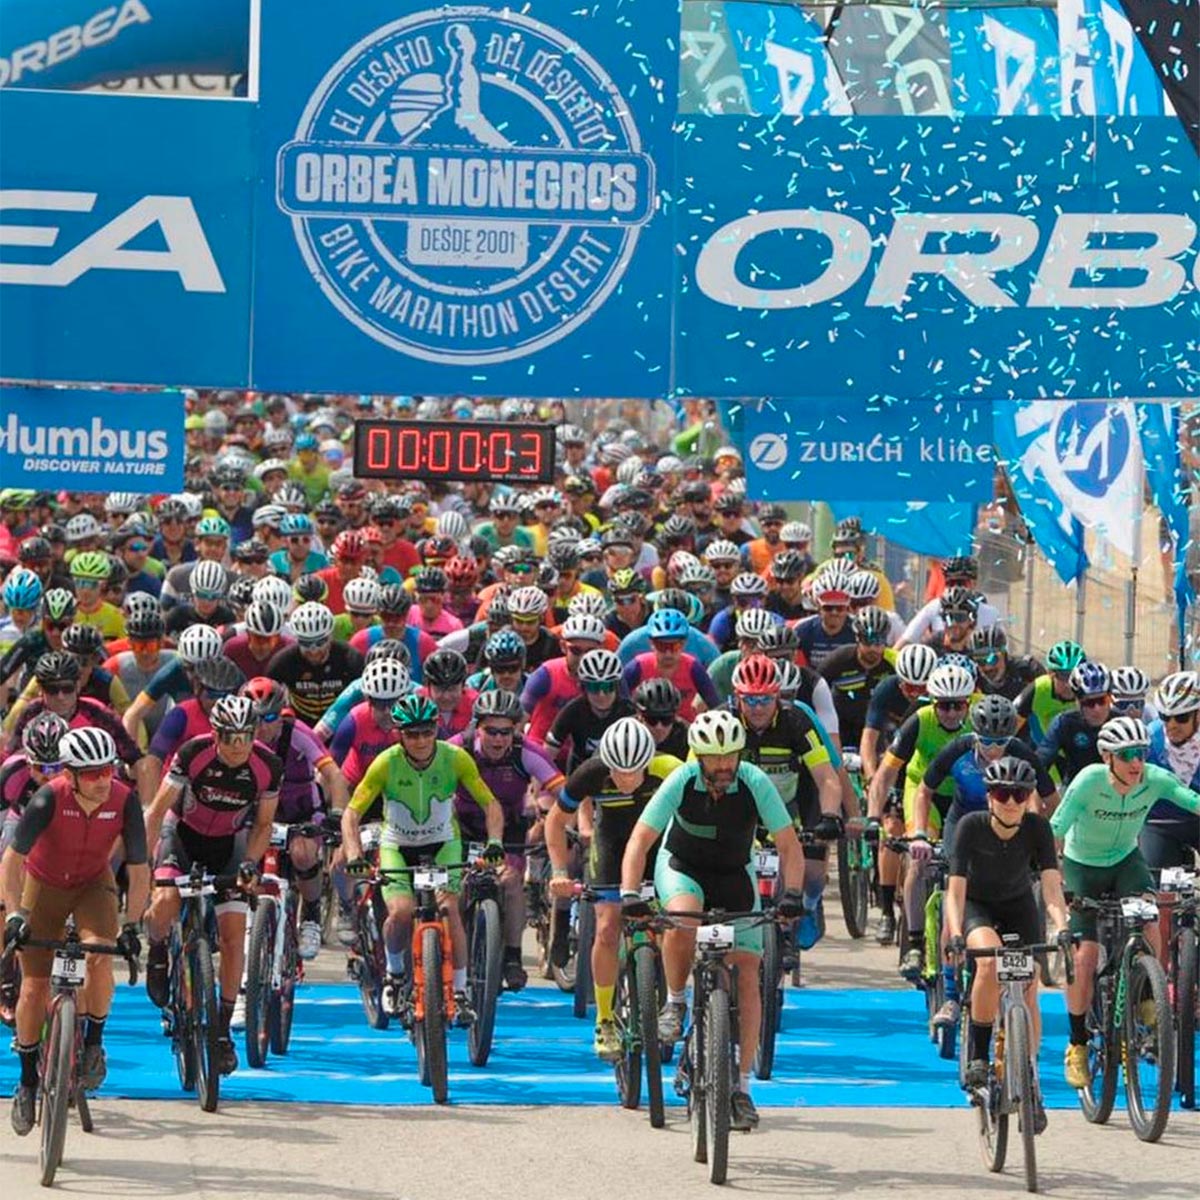 La XXI edición de la Orbea Monegros concluye con 8.000 ciclistas satisfechos tras un fin de semana épico